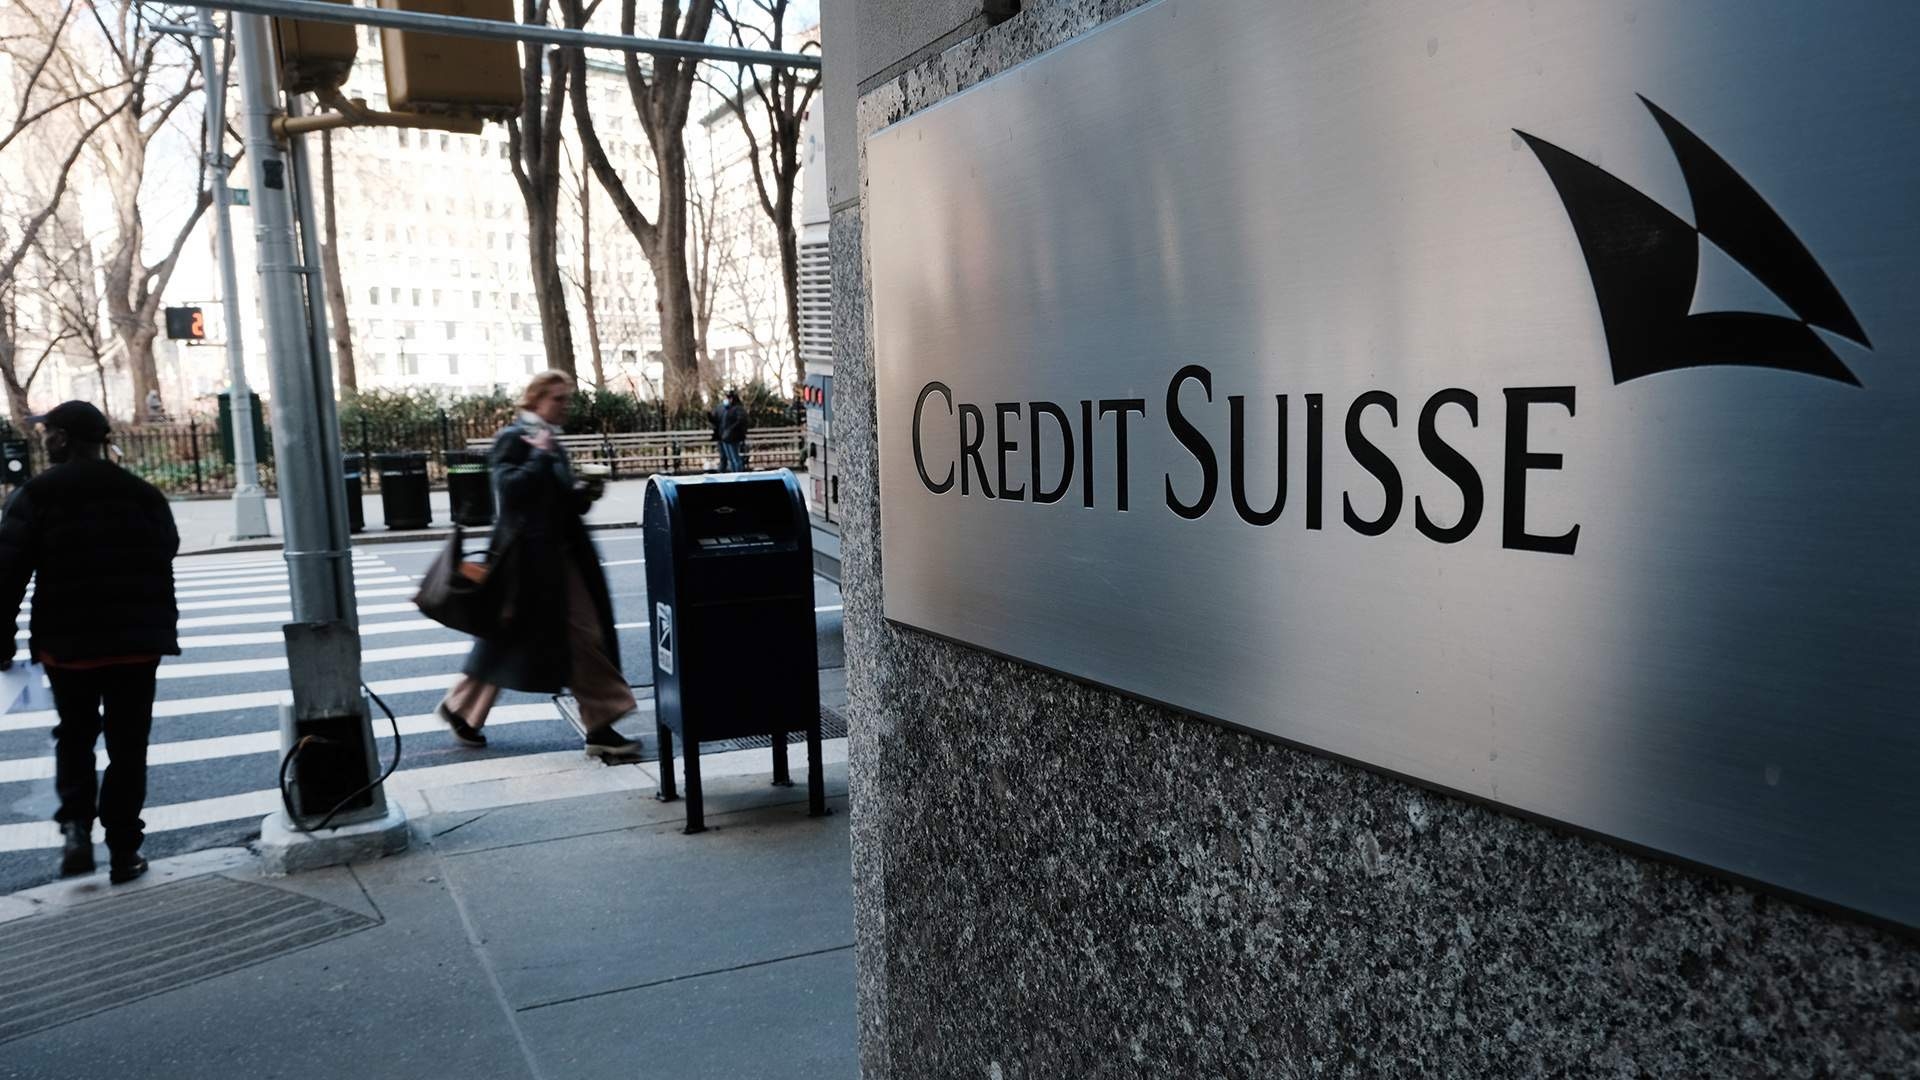 В Швейцарии решили национализировать банк Credit Suisse